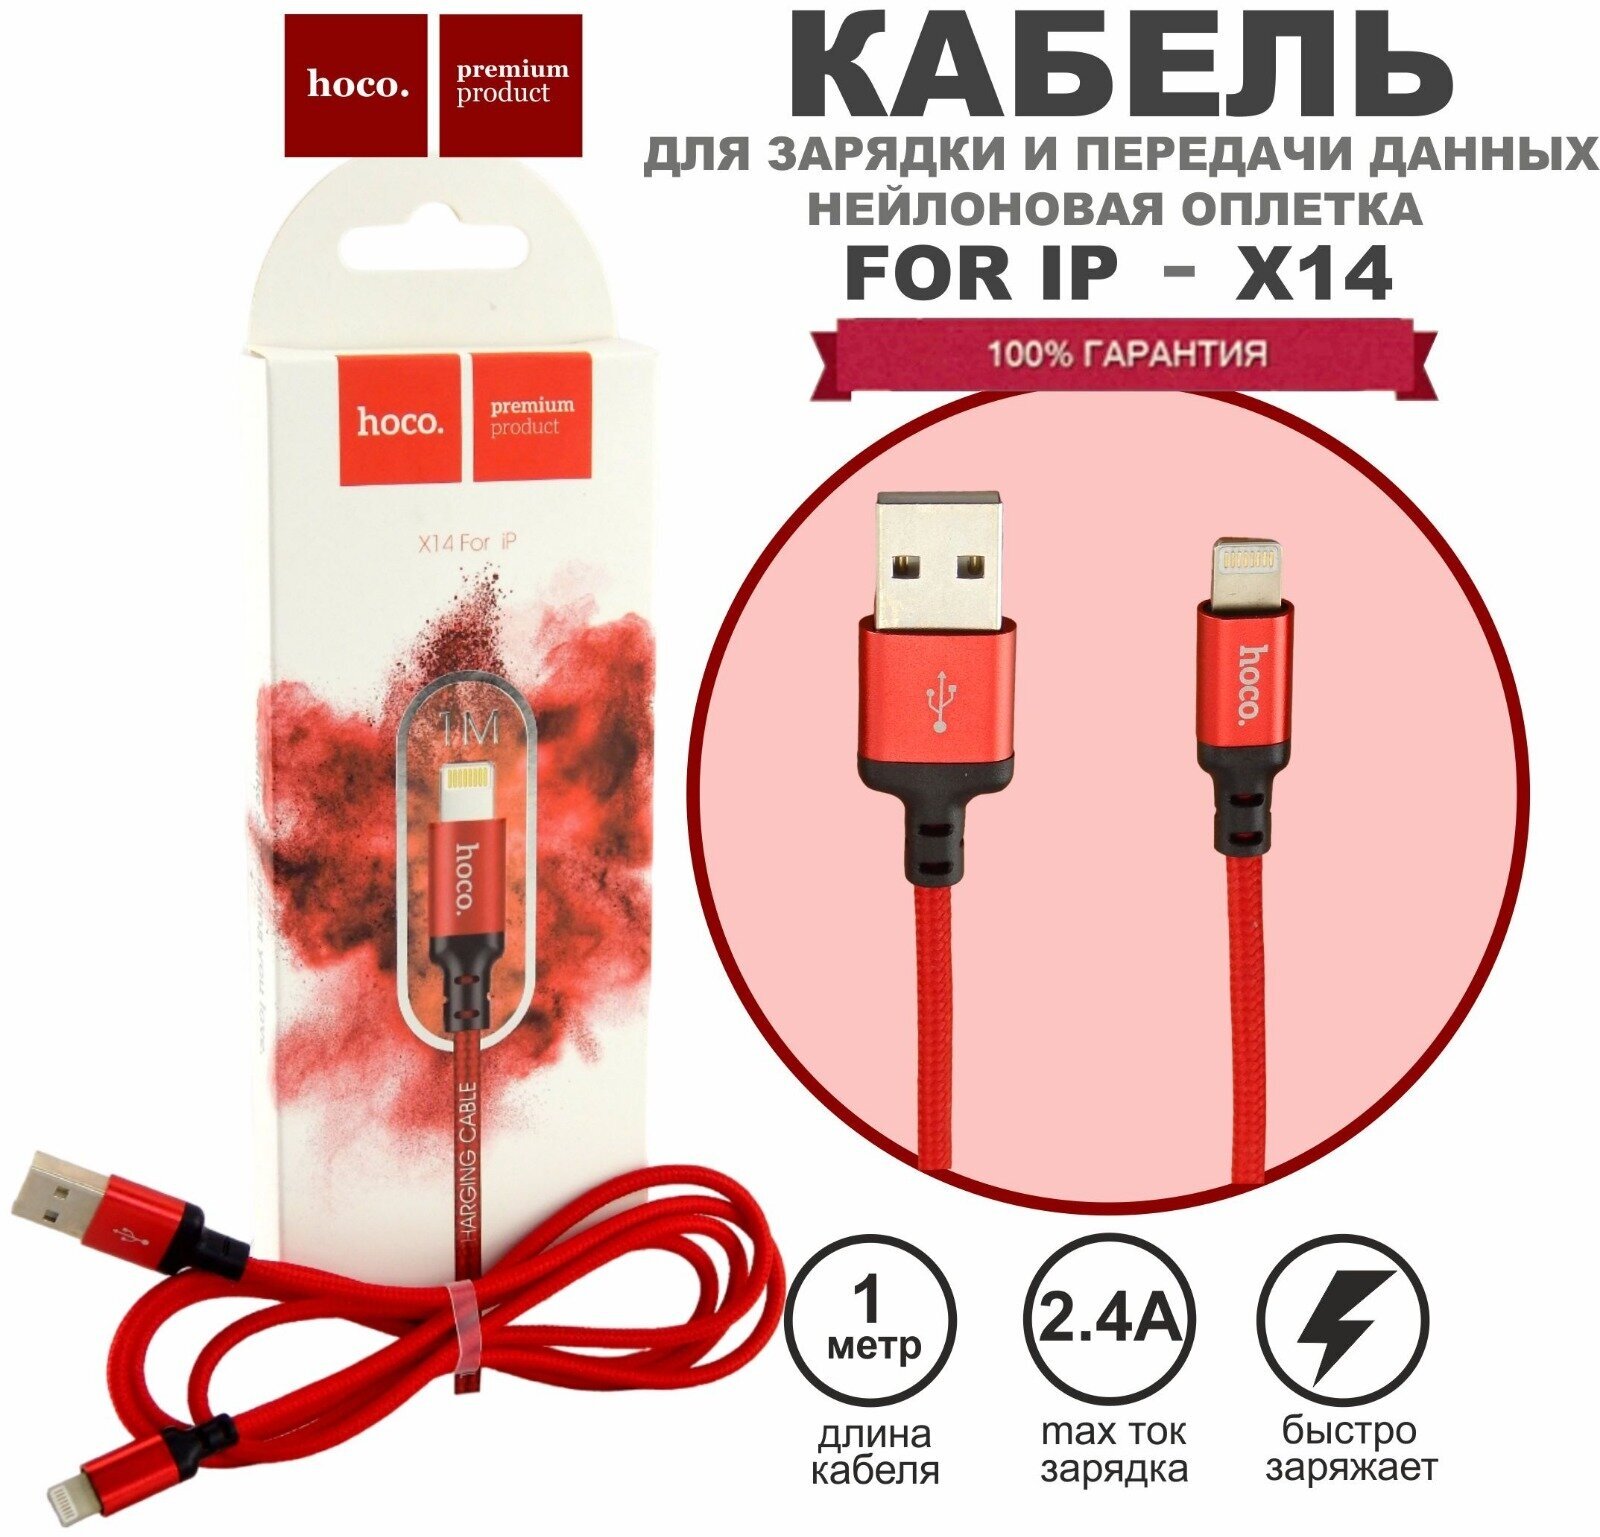 Кабель HOCO X14 Lightning -USB для быстрой зарядки Apple iPhone iPad AirPods кабель зарядка для айфон 1м 24А